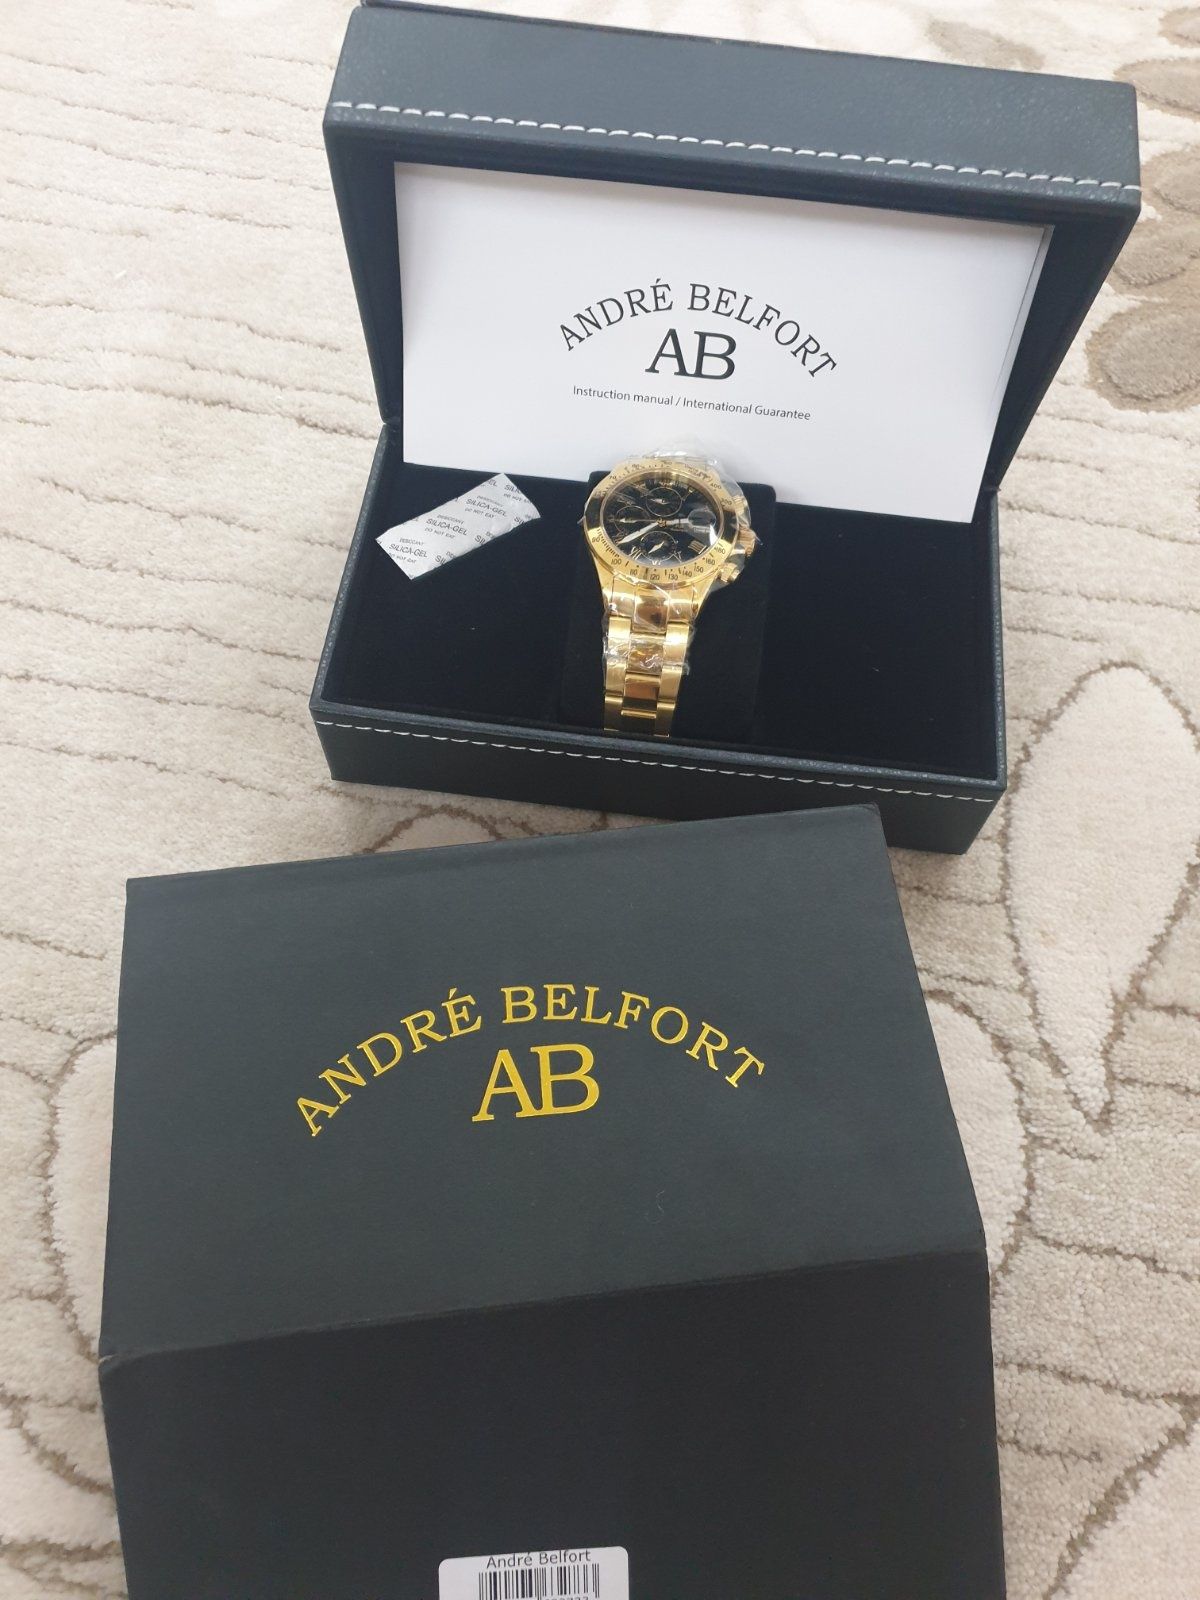 Andre belfort часы лучший подарок !!!